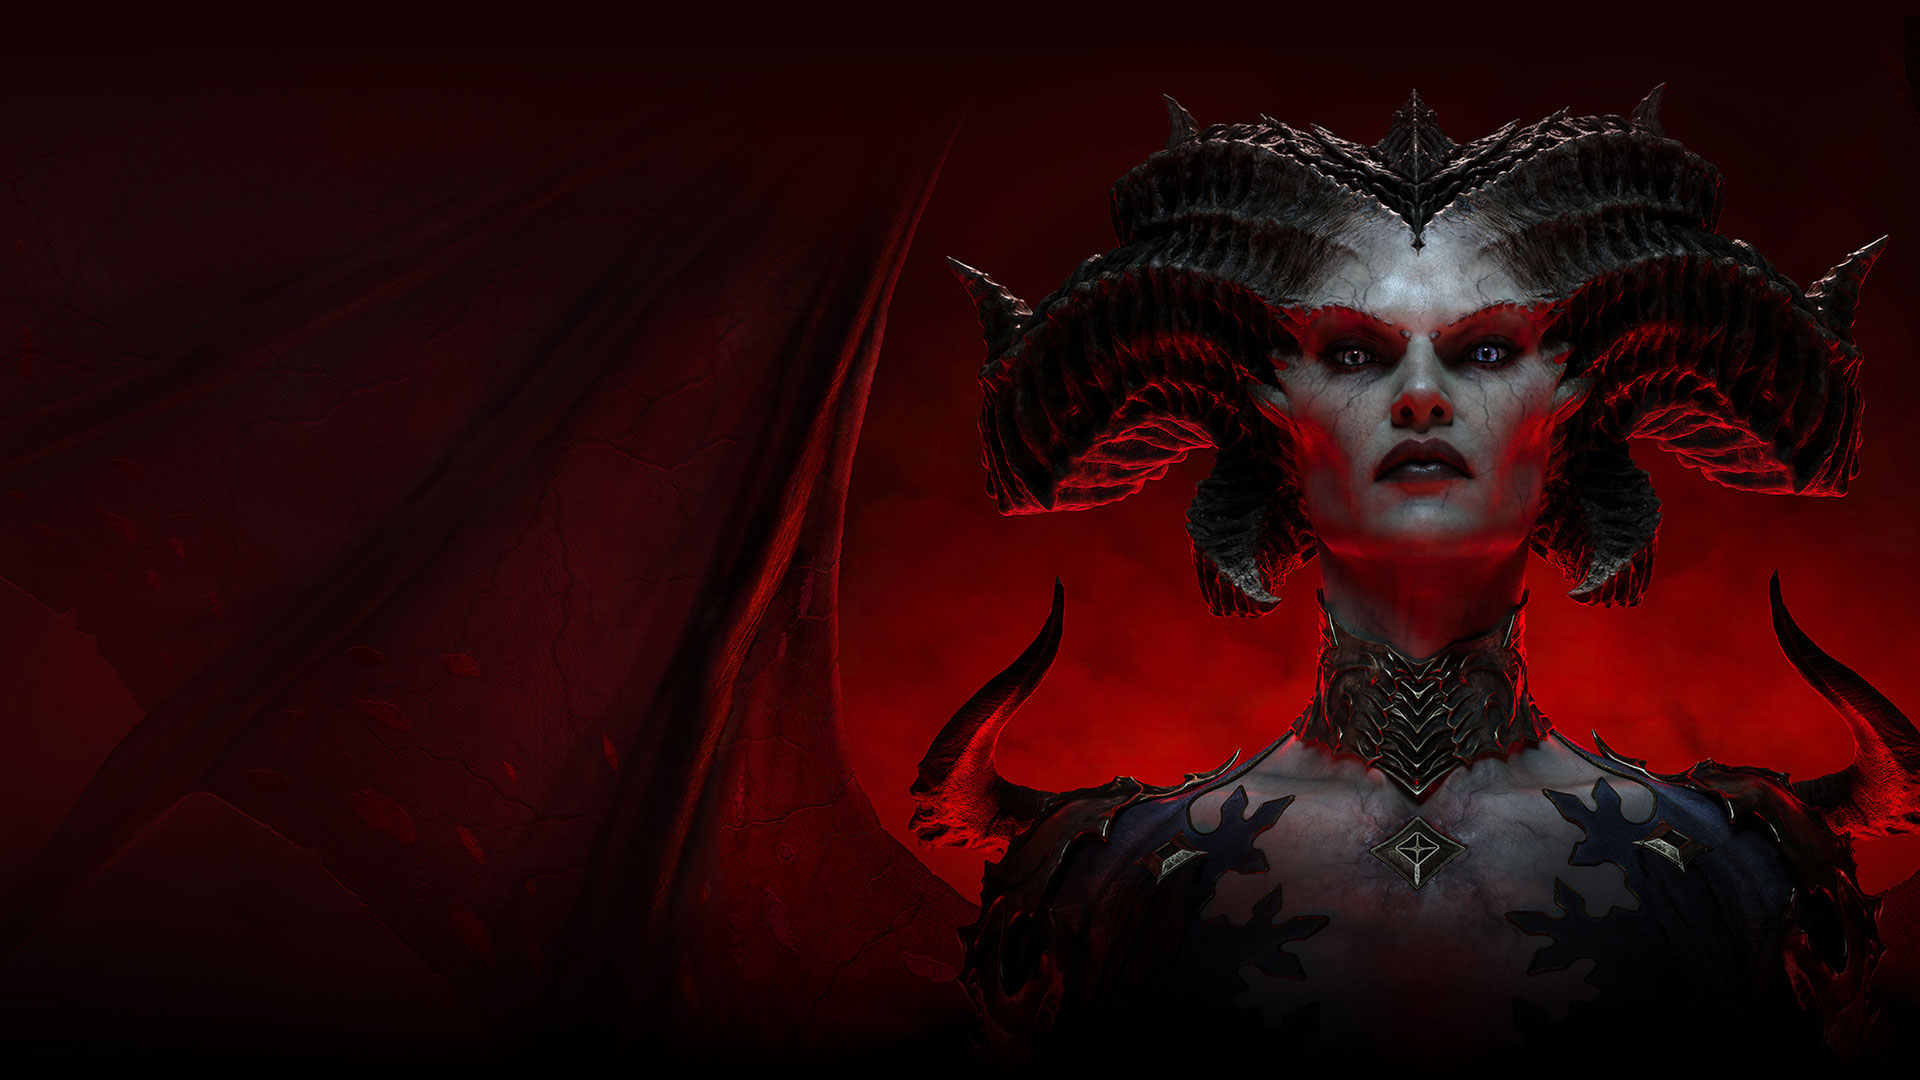 Η Lilith, ένας δαίμονας με κέρατα και κόκκινα φτερά, κοιτάζει απειλητικά προς τα εμπρός.